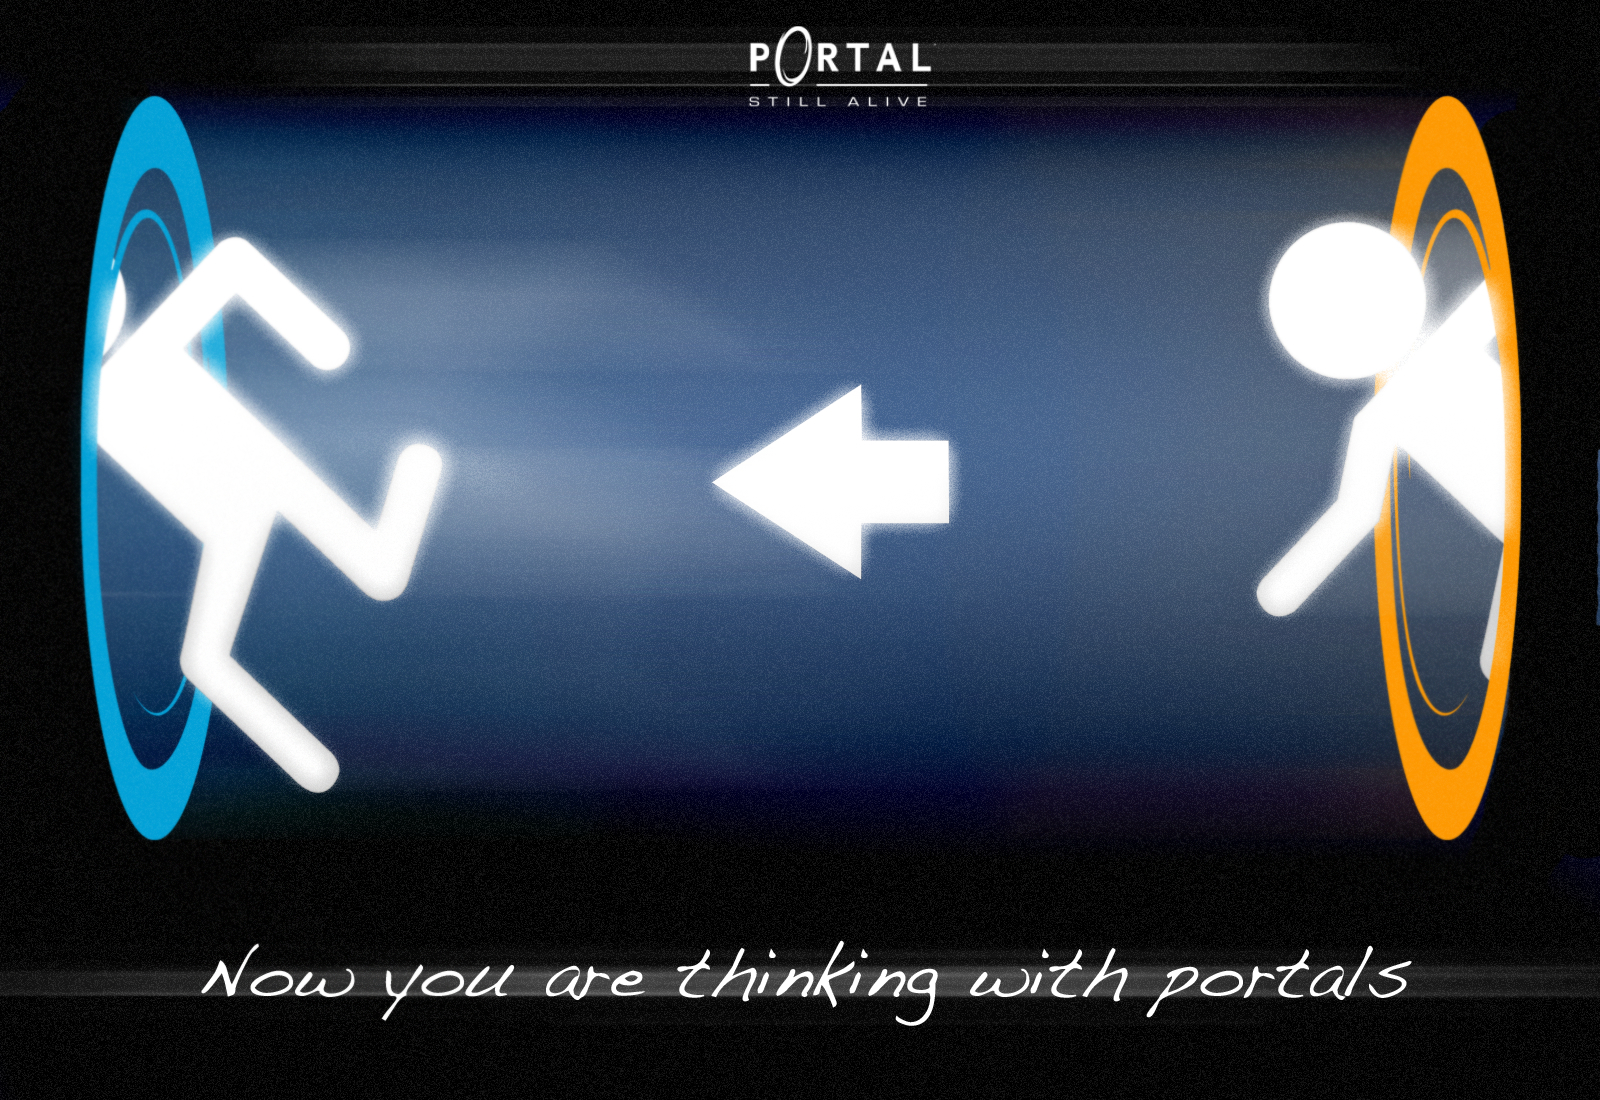 Портал 1 ошибка. Значок портал 1. Portal galile0. Portal человек со стрелкой. Think with Portals.